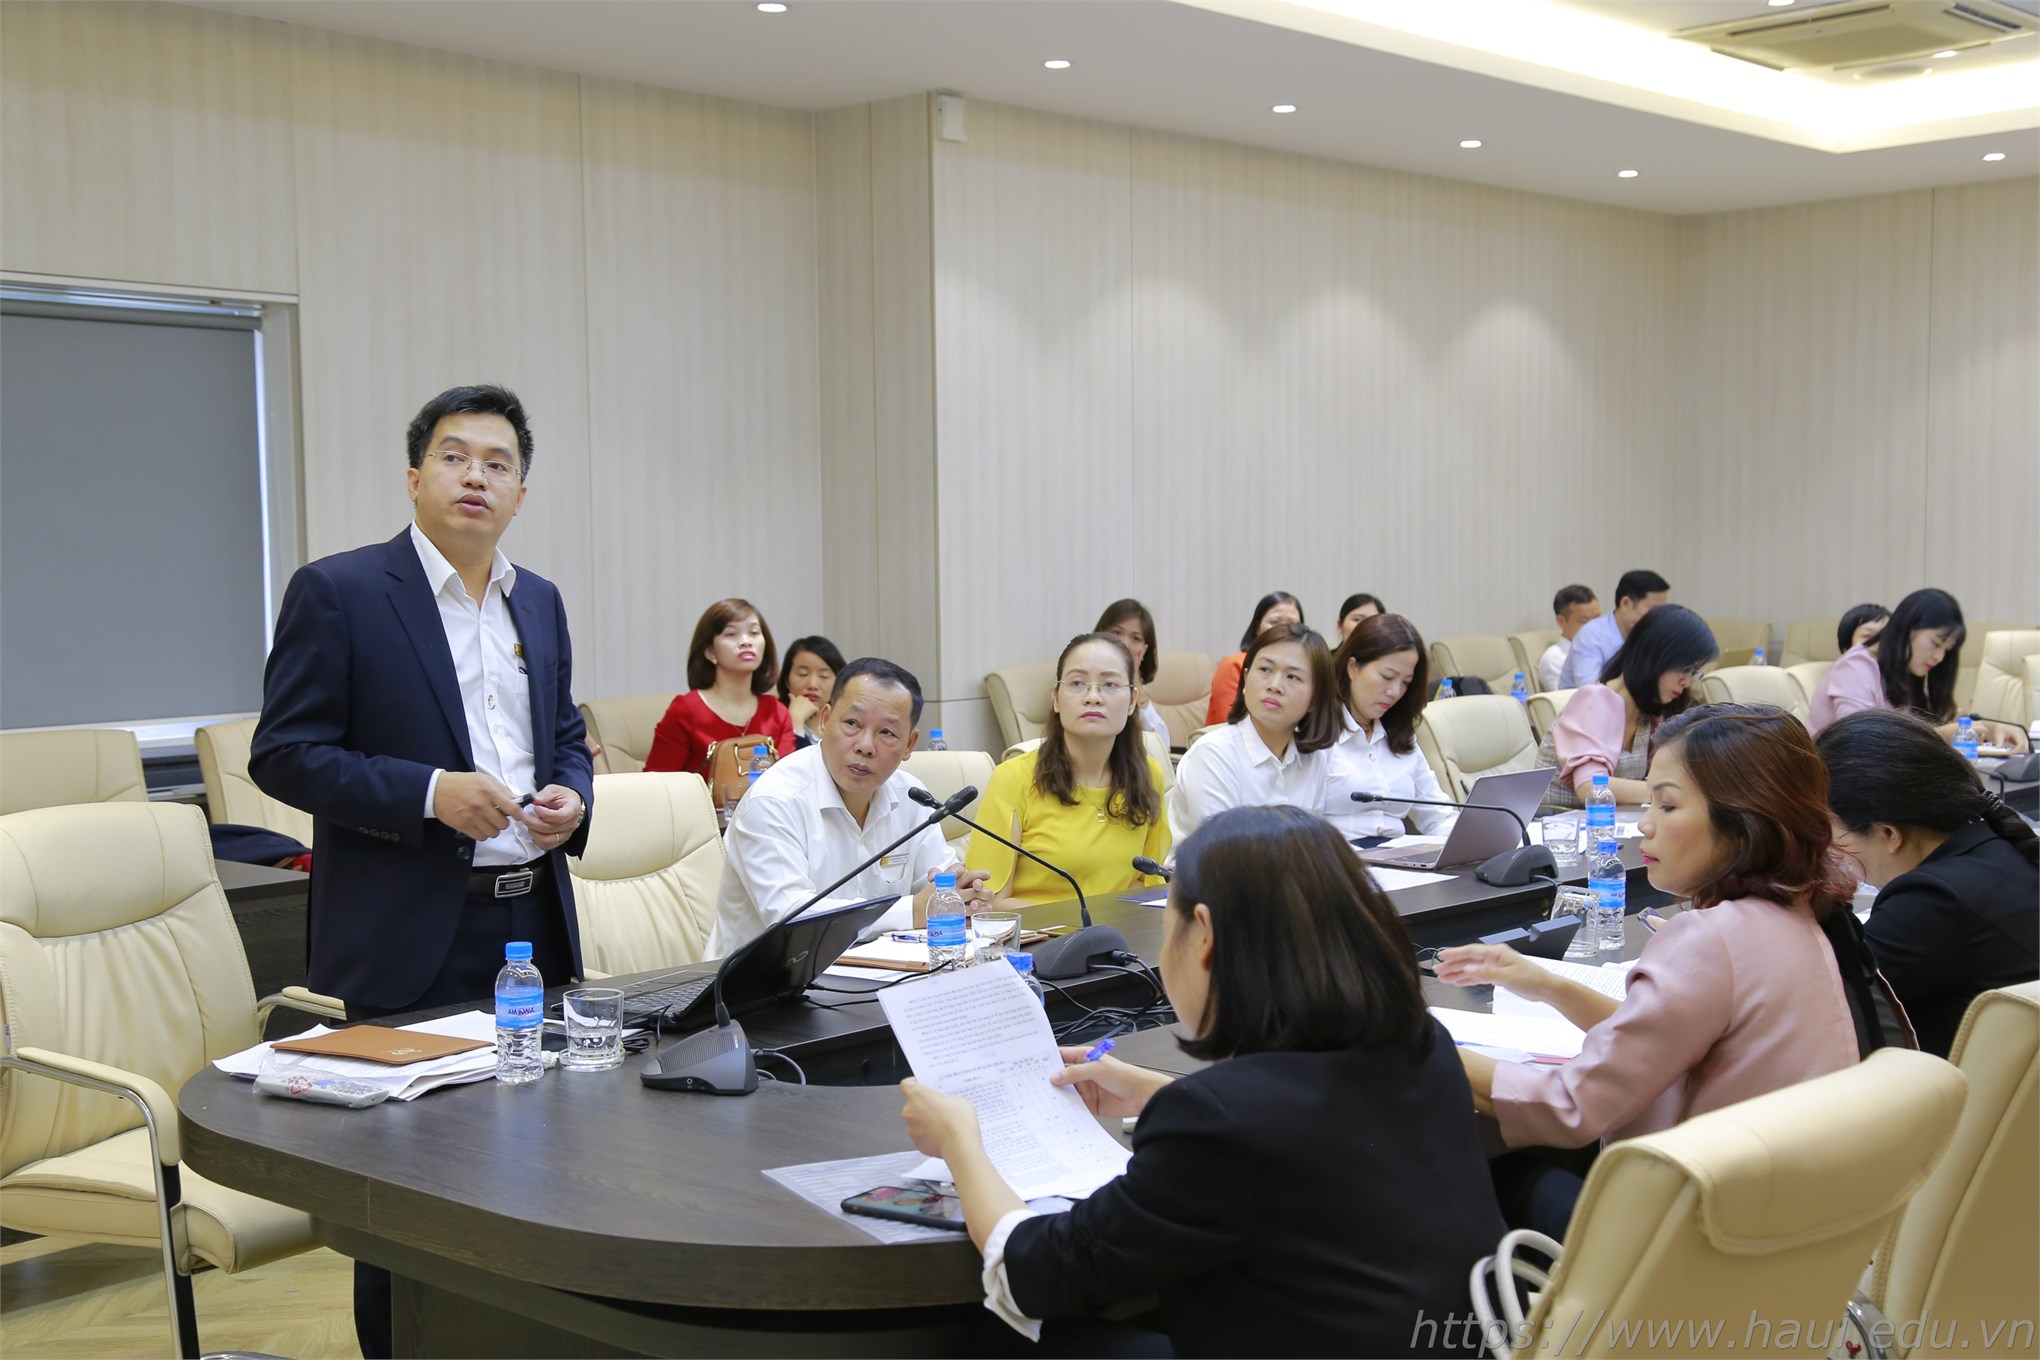 Tọa đàm đổi mới chương trình đào tạo ngành kiểm toán tại Đại học Công nghiệp Hà Nội